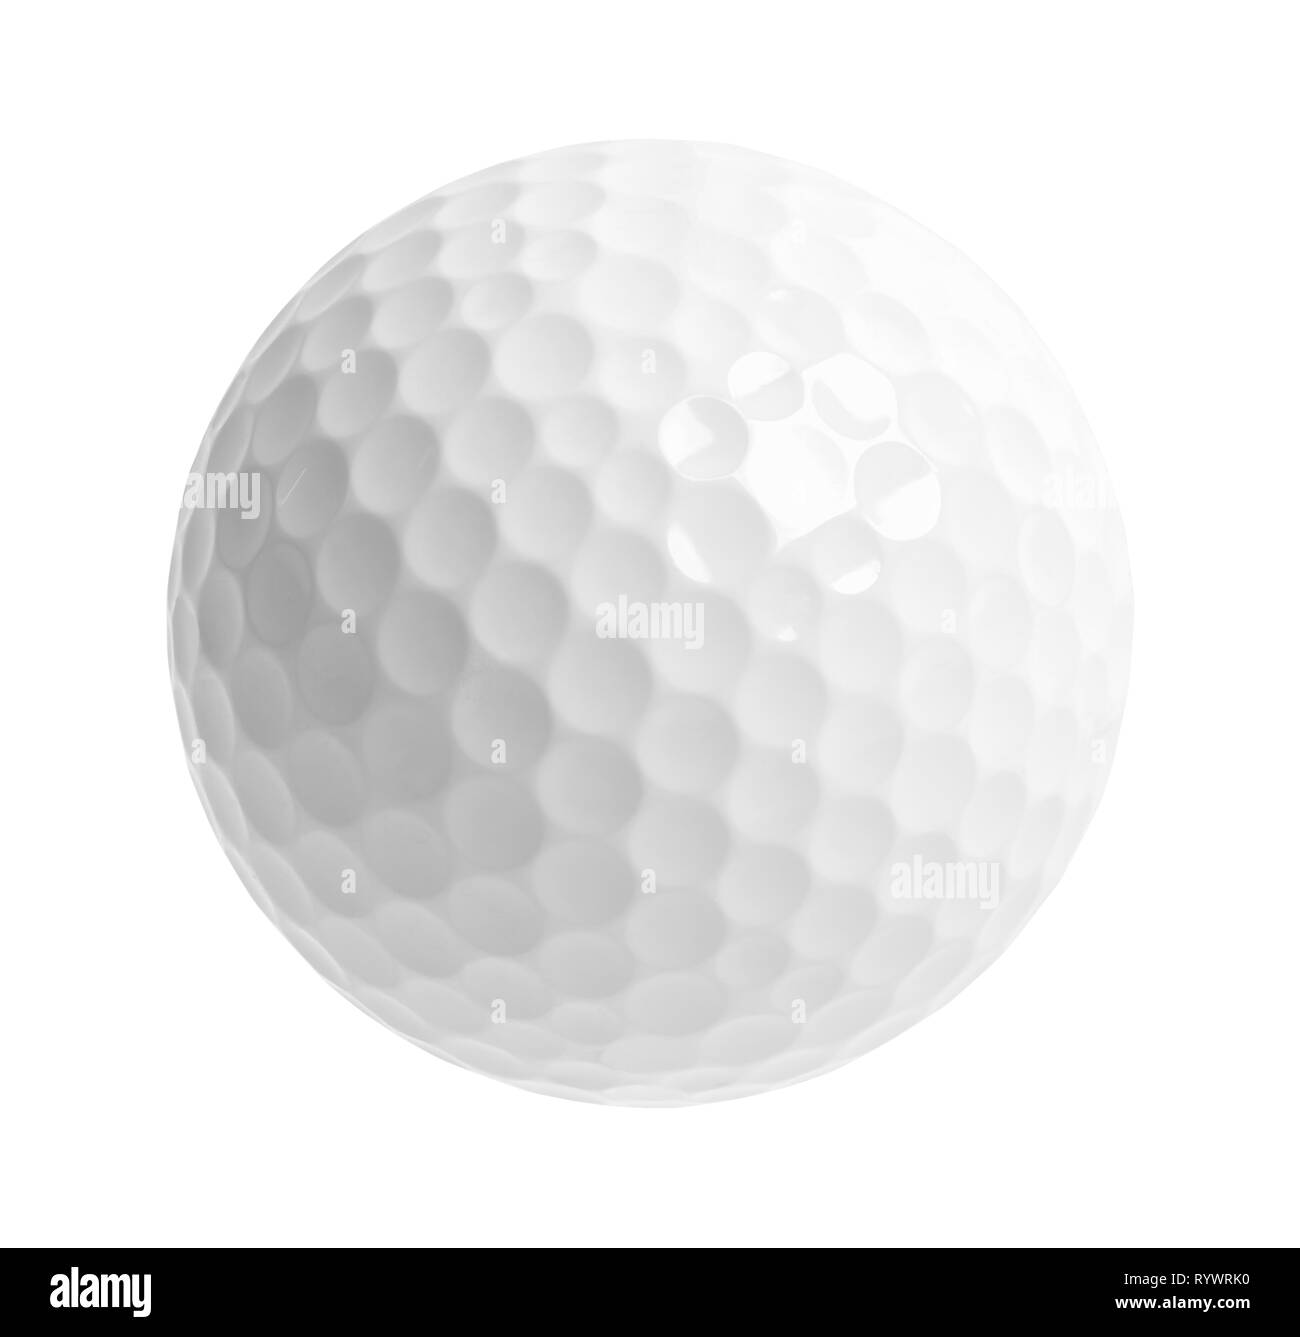 Combien De Balle De Golf Dans Un Bus Miniature golf Banque d'images noir et blanc - Alamy